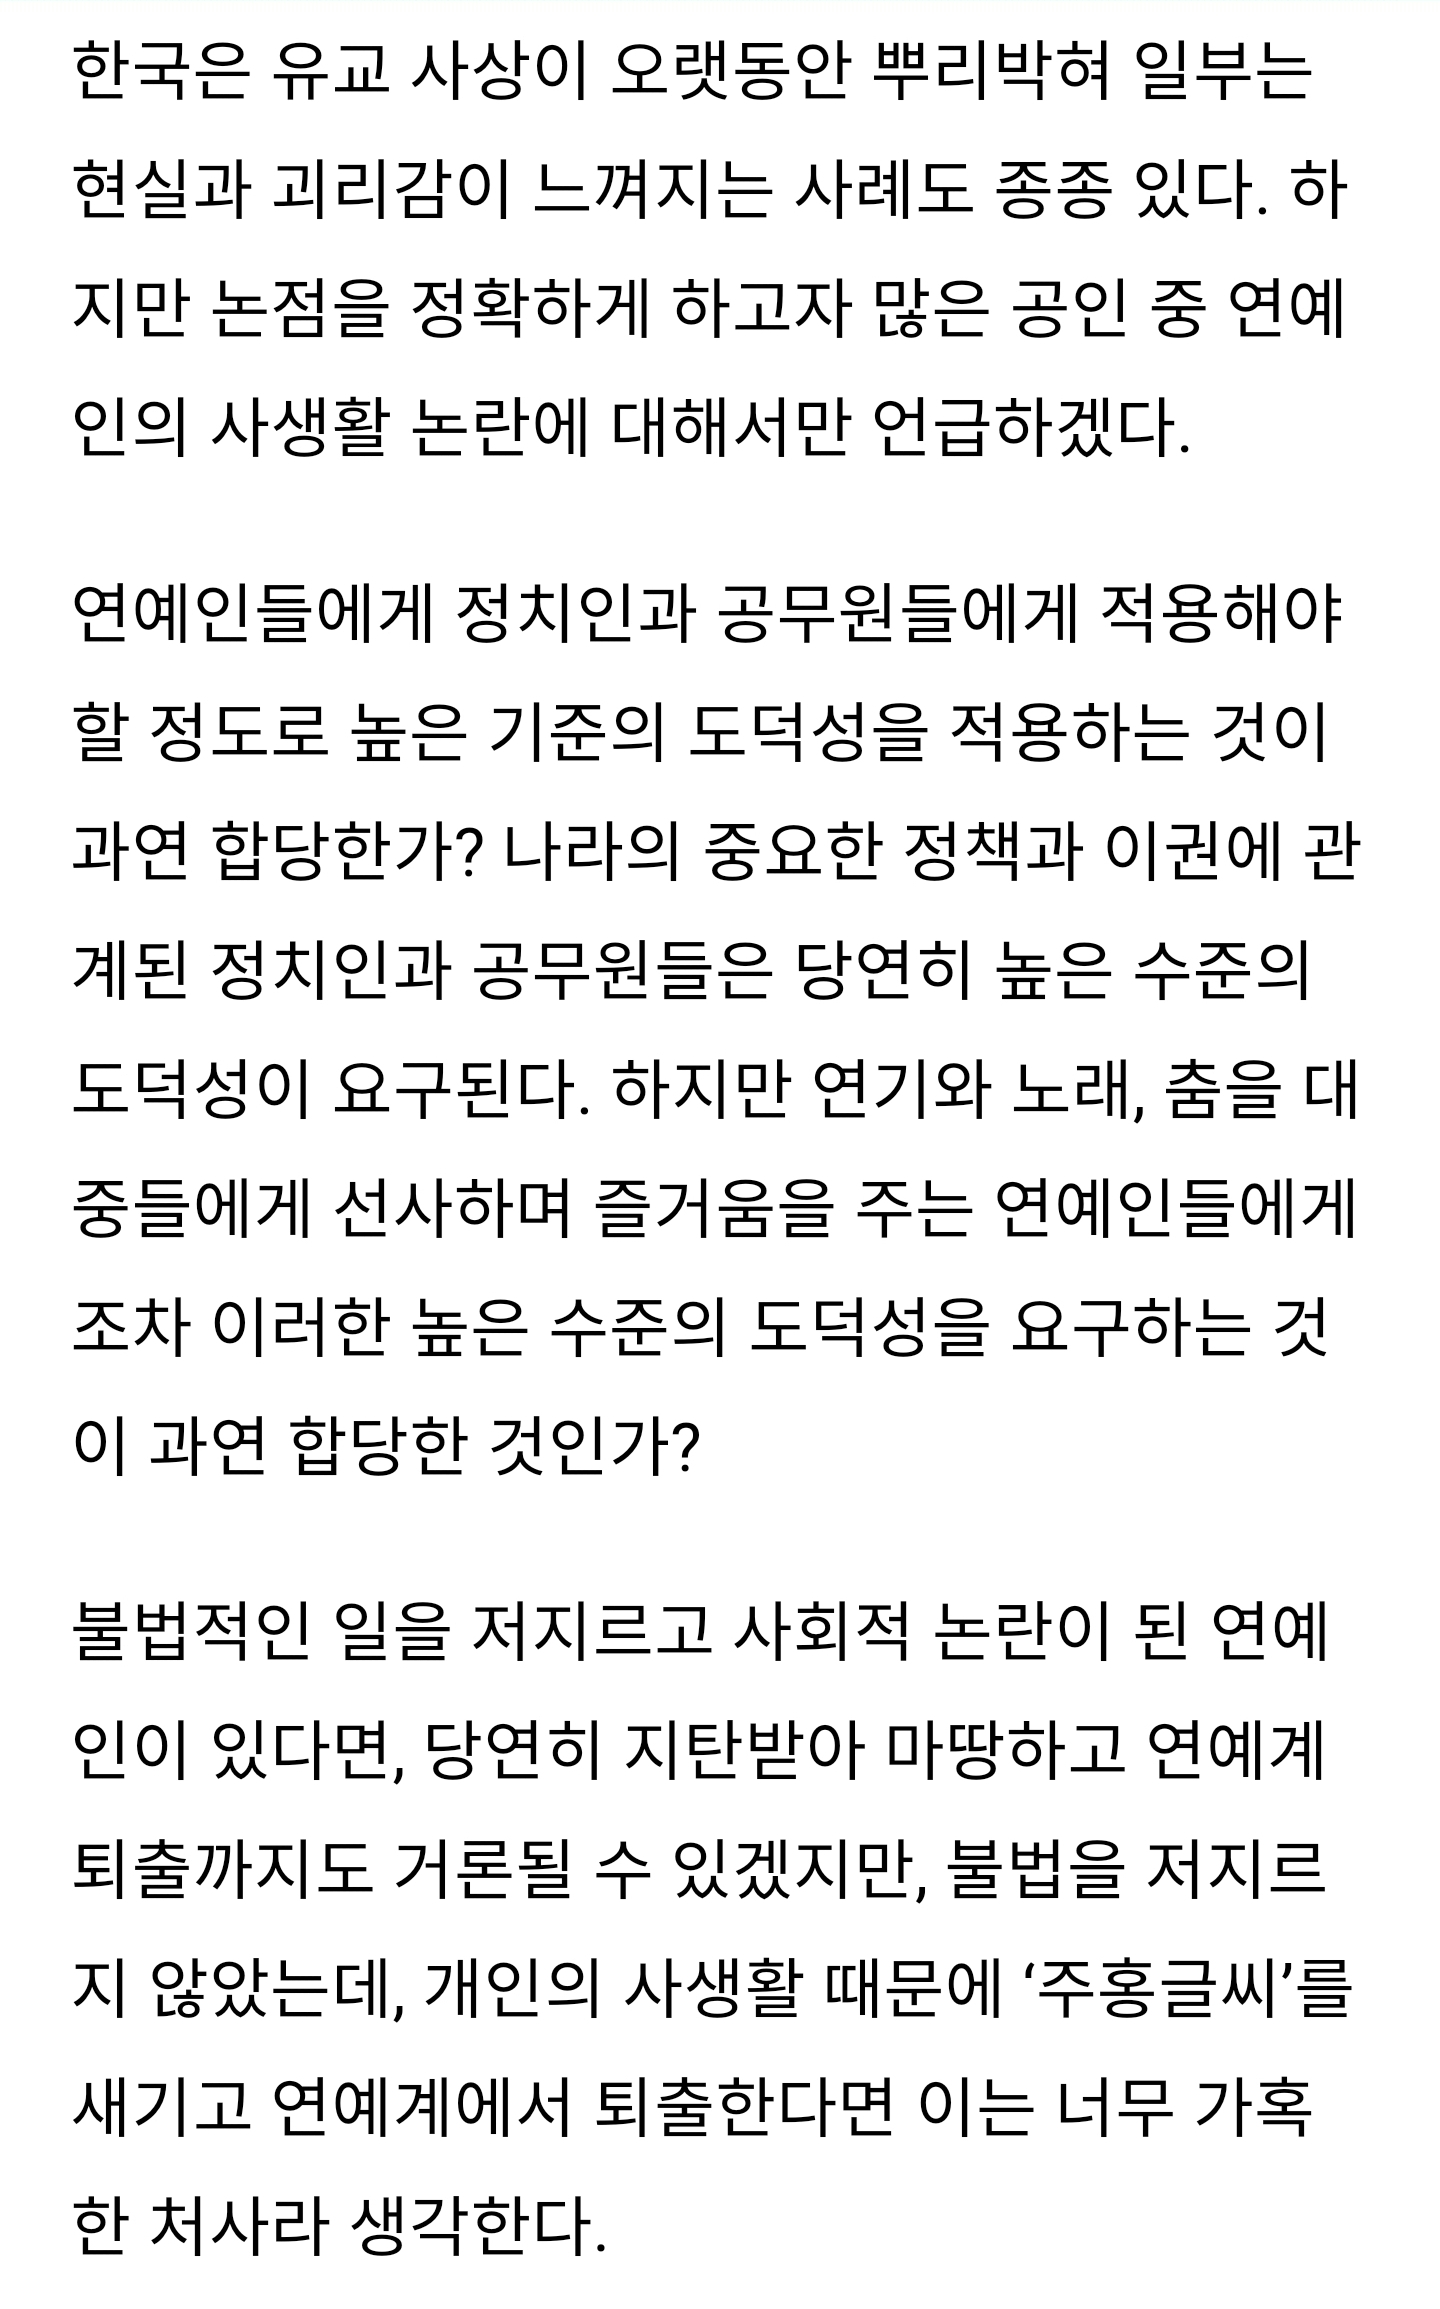 [정보/소식] [칼럼] 김선호 사생활 논란, #cancel culture 합당한가? | 인스티즈